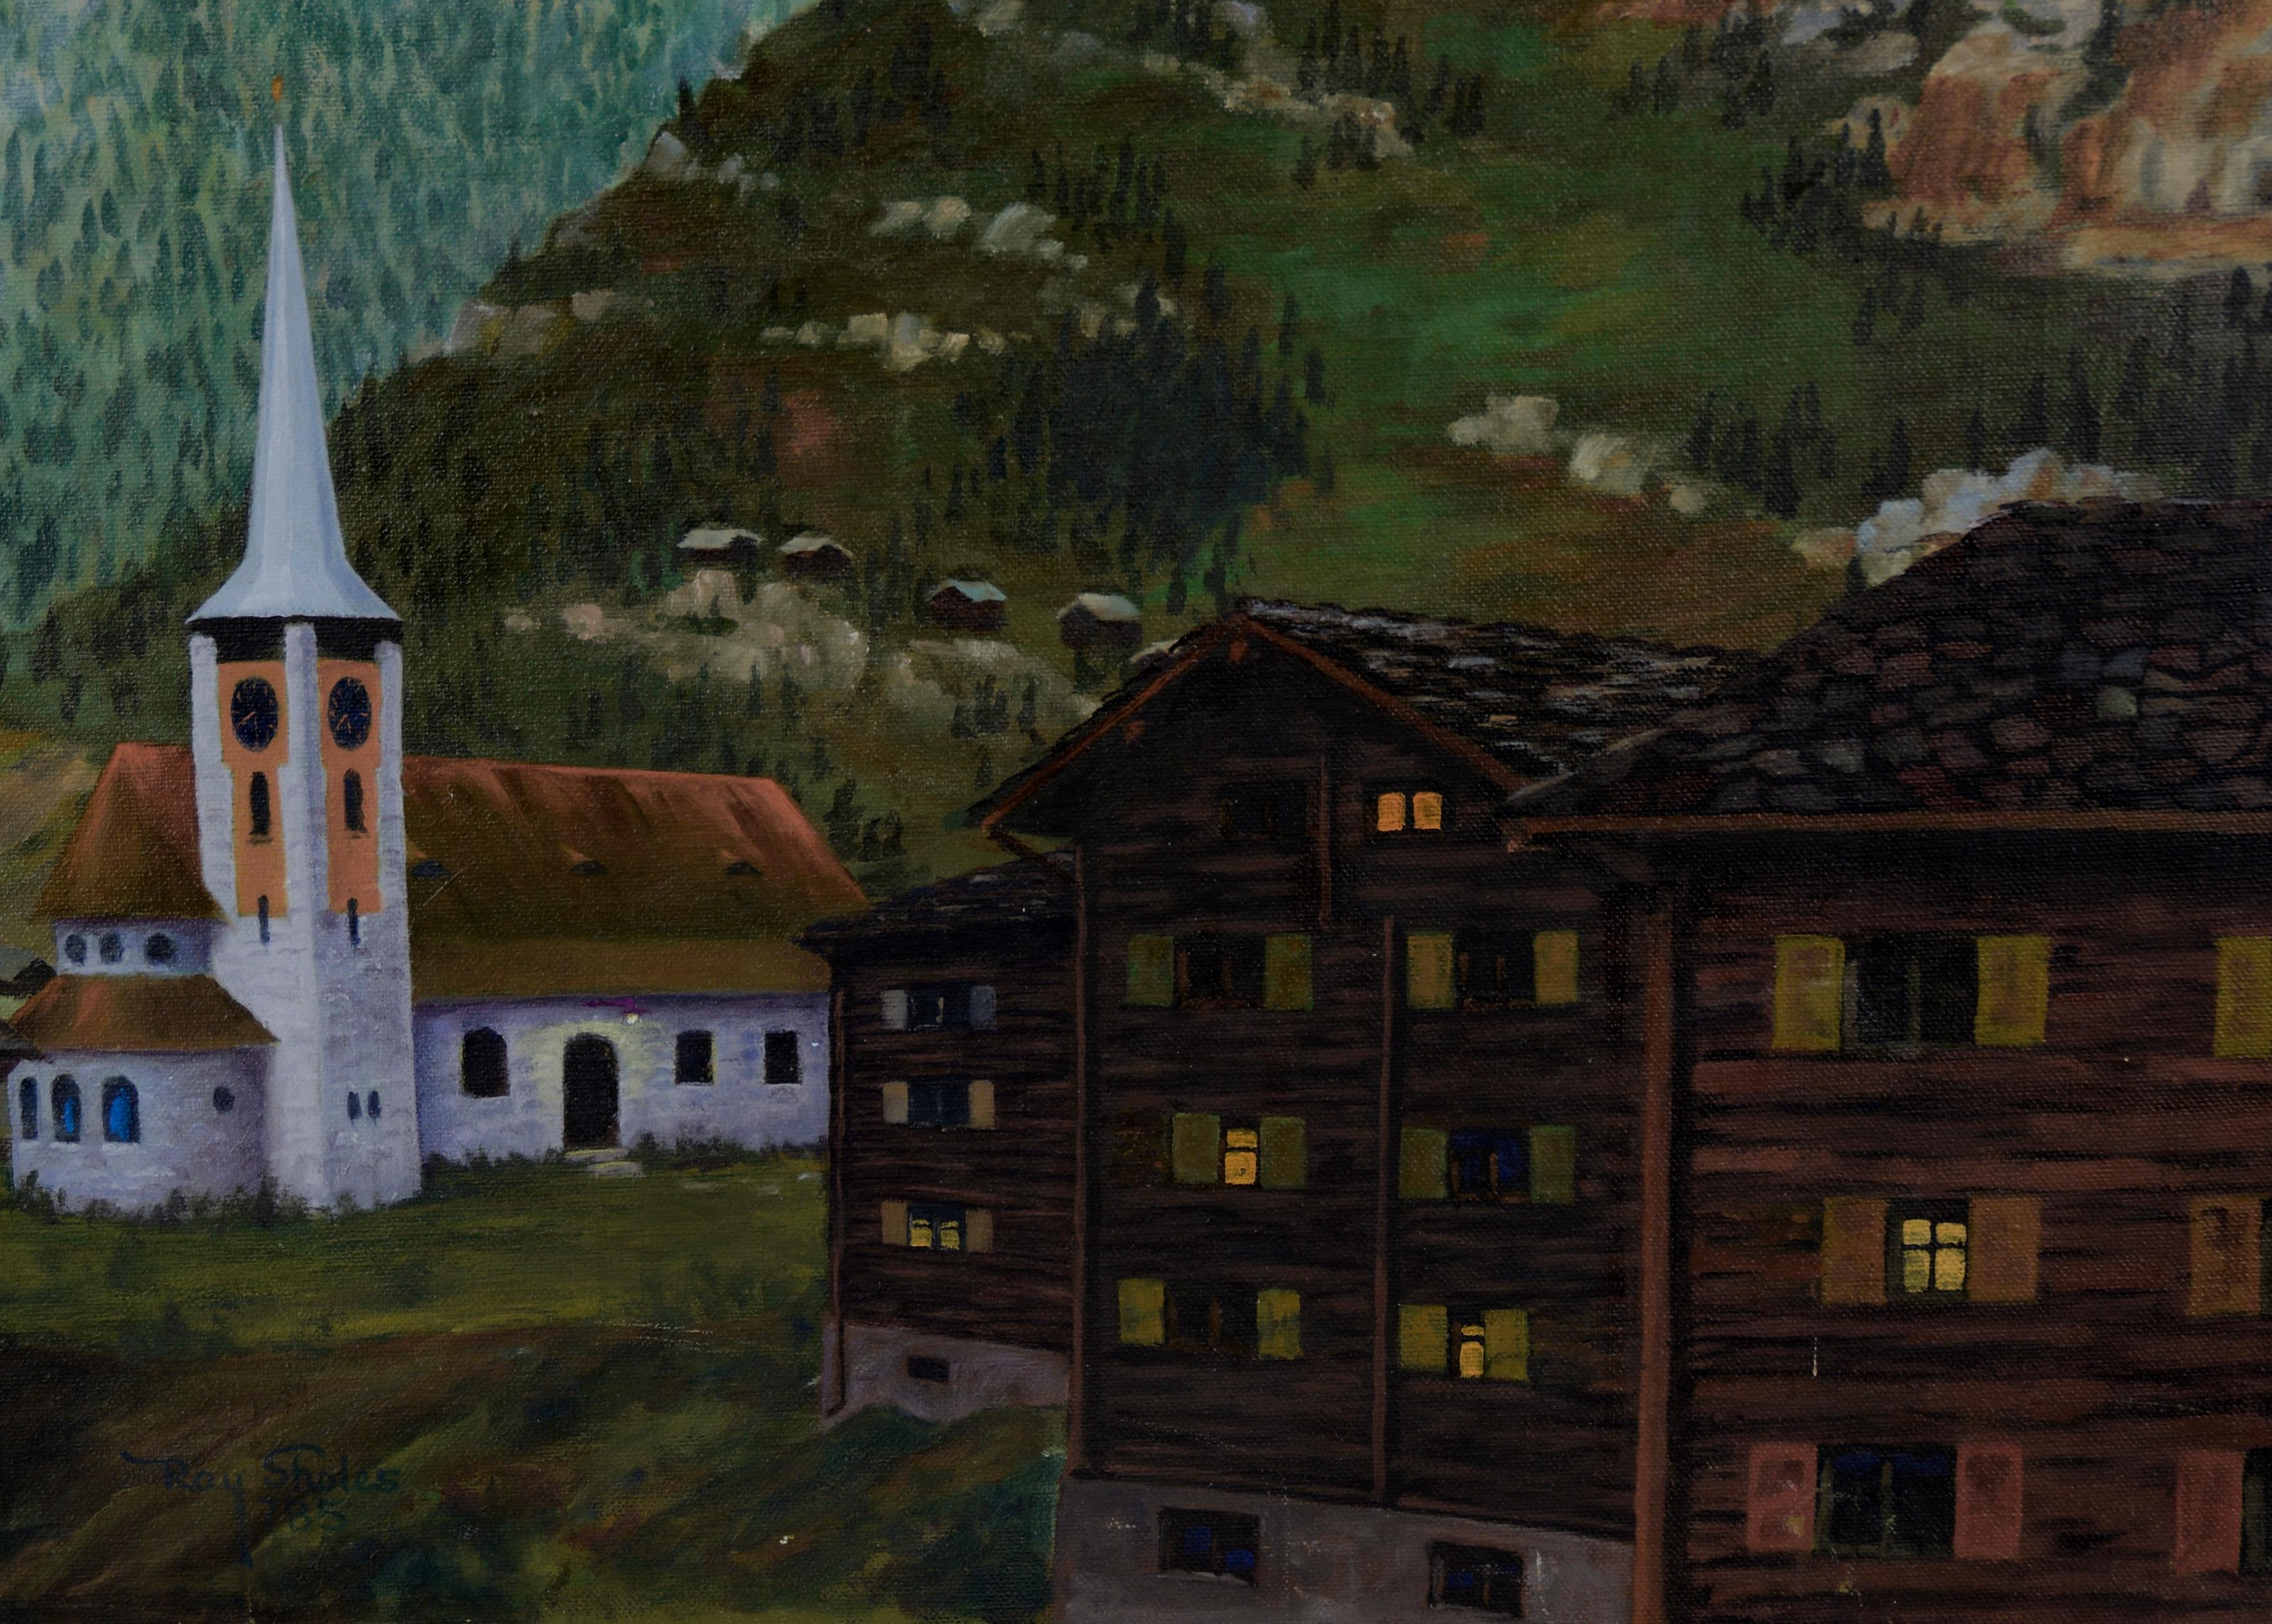 Under the Matterhorn – Acryl auf Leinwand

Ein verschlafenes Dorf liegt im Schatten des Matterhorns auf diesem Gemälde eines unbekannten Künstlers im Schweizer Stil. Eine Handvoll Lichter erhellt die Fenster und den Eingang der Kirche, während der